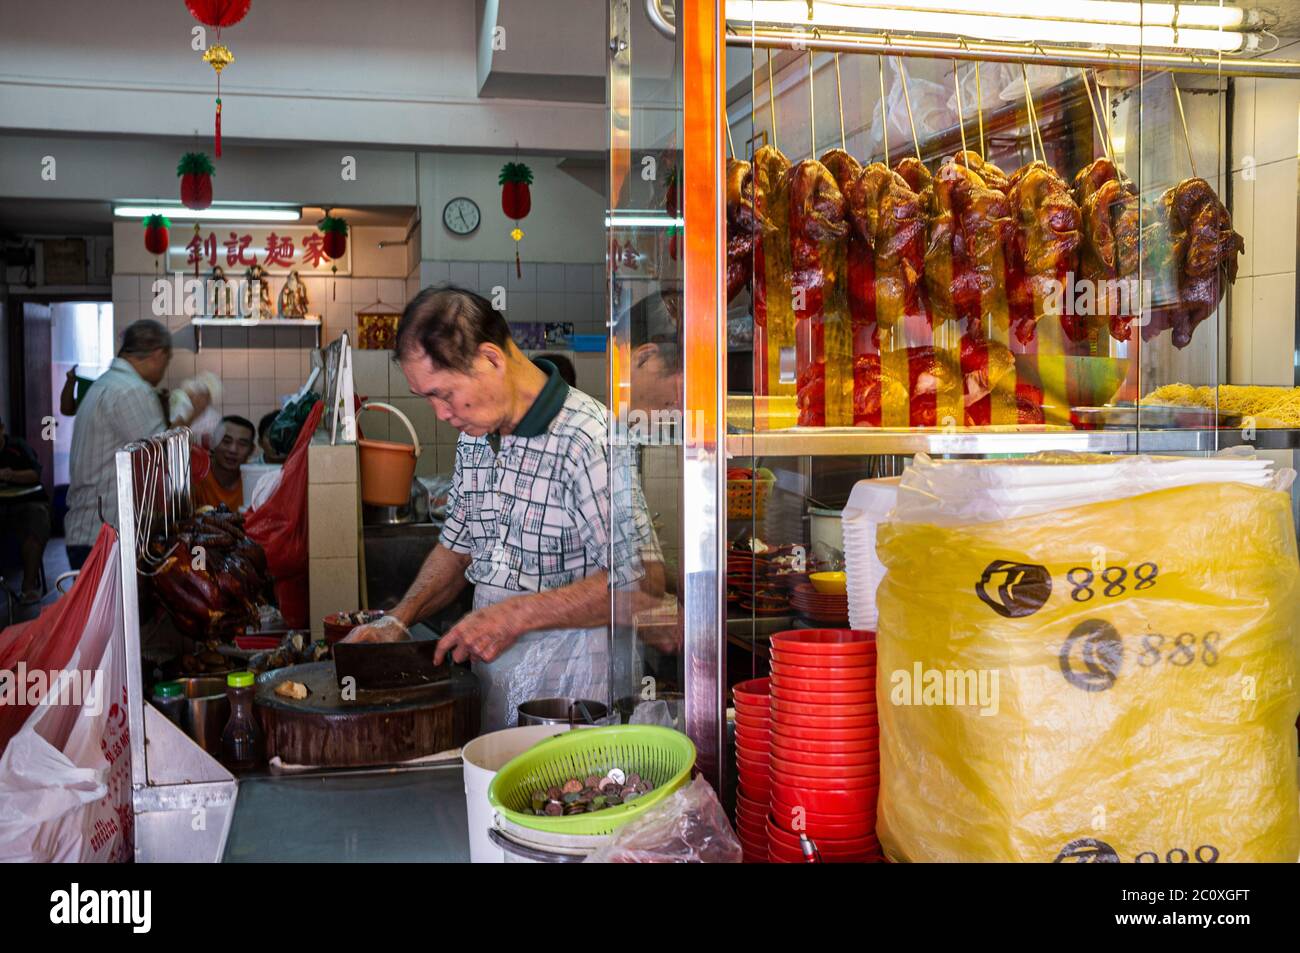 Cuisine de rue chinoise. Chinatown. Singapour Banque D'Images